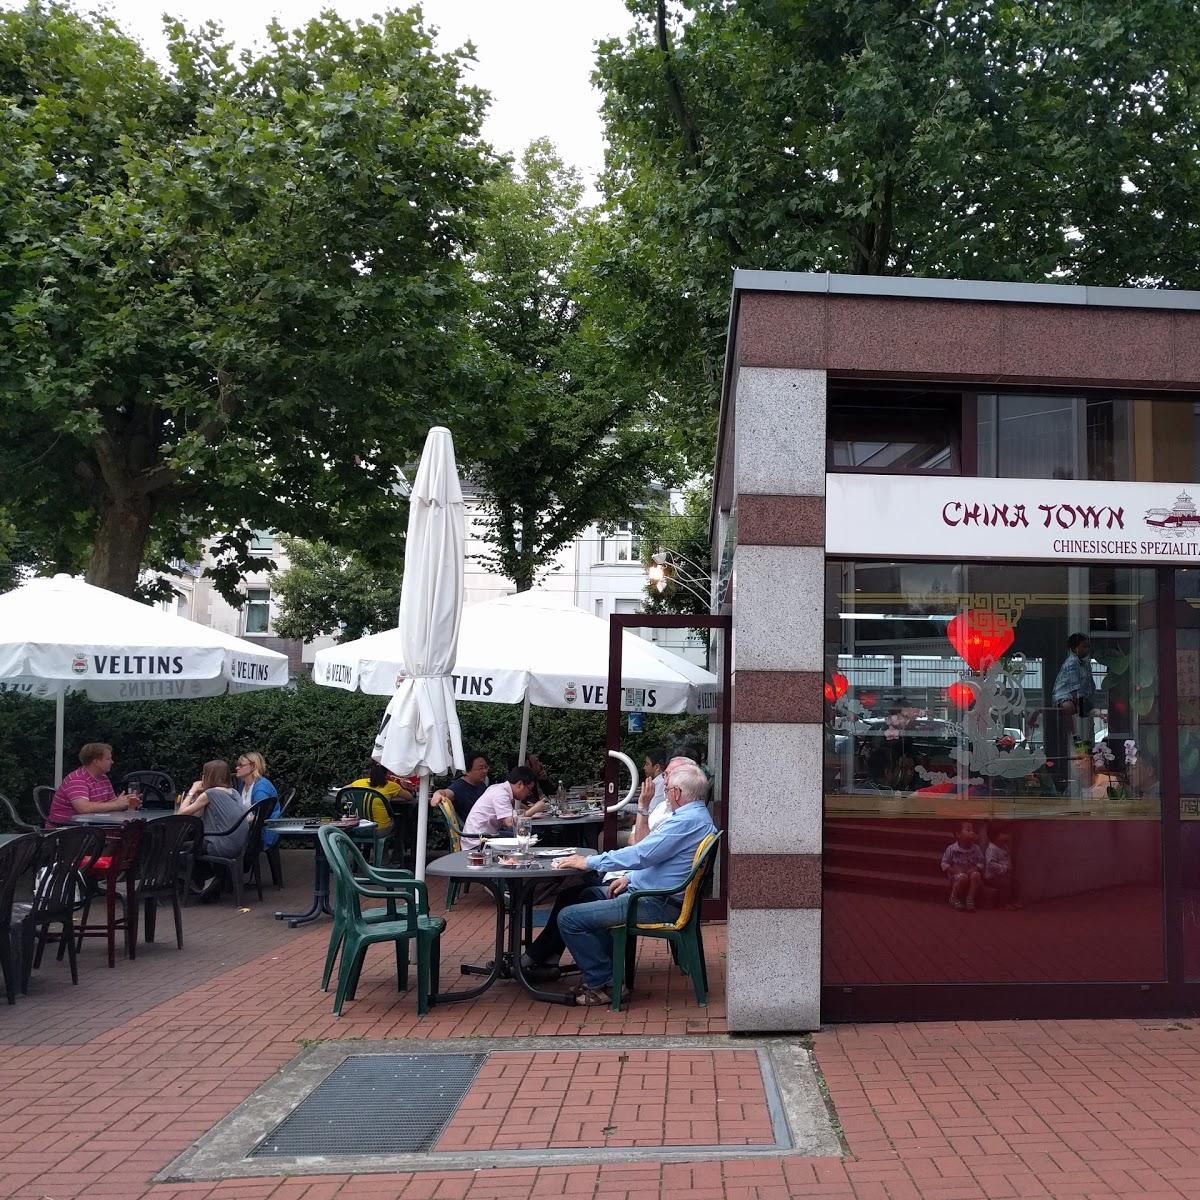 Restaurant "New China Town" in Düsseldorf